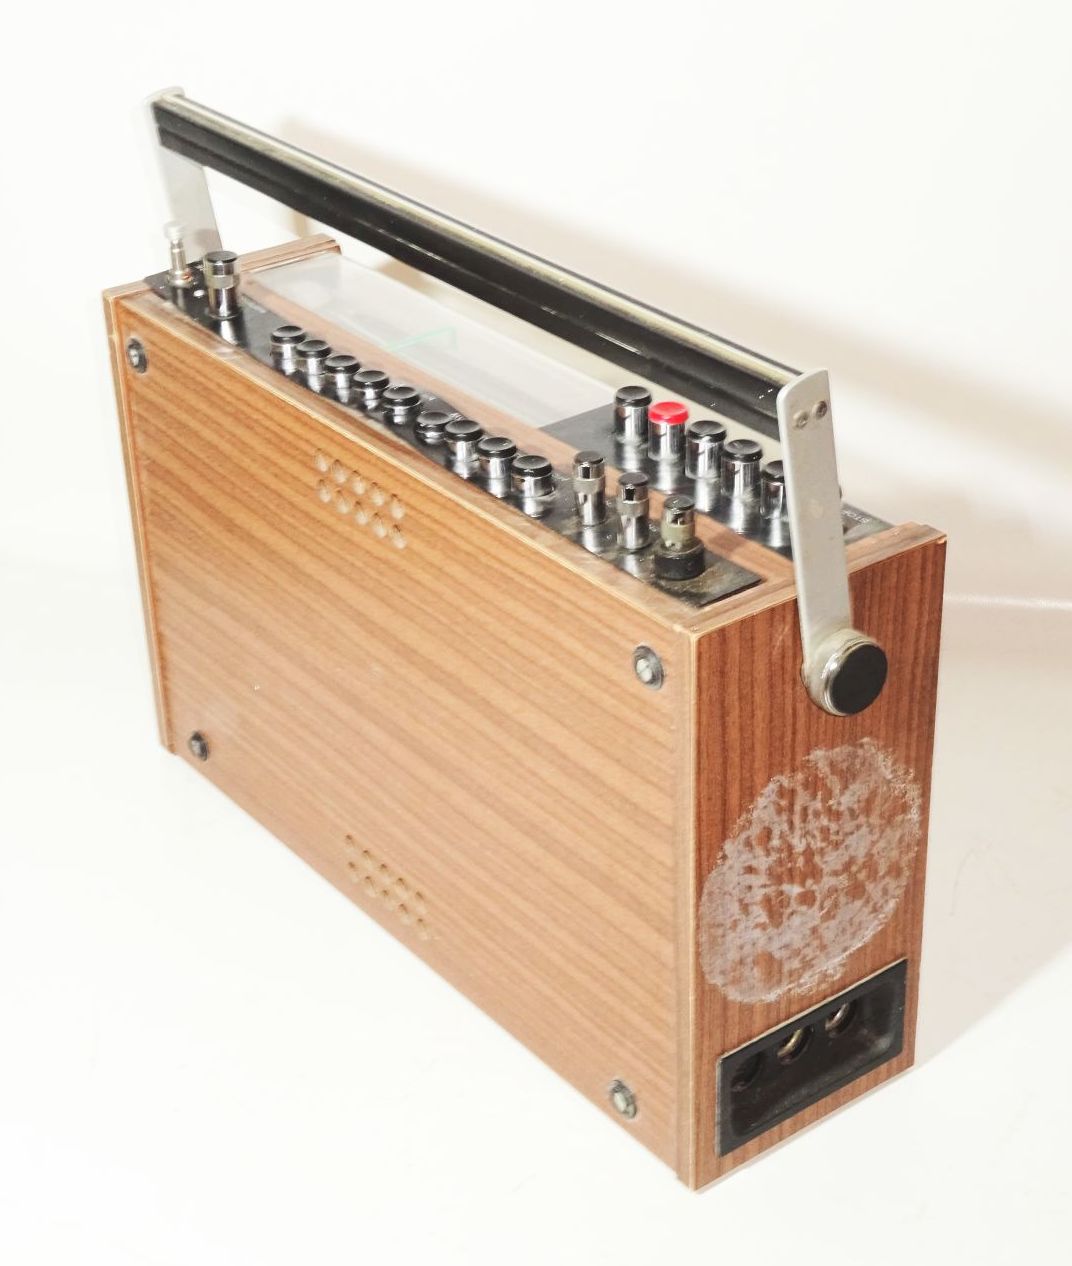 Stern Recorder R160 mit Kassette DDR Radio